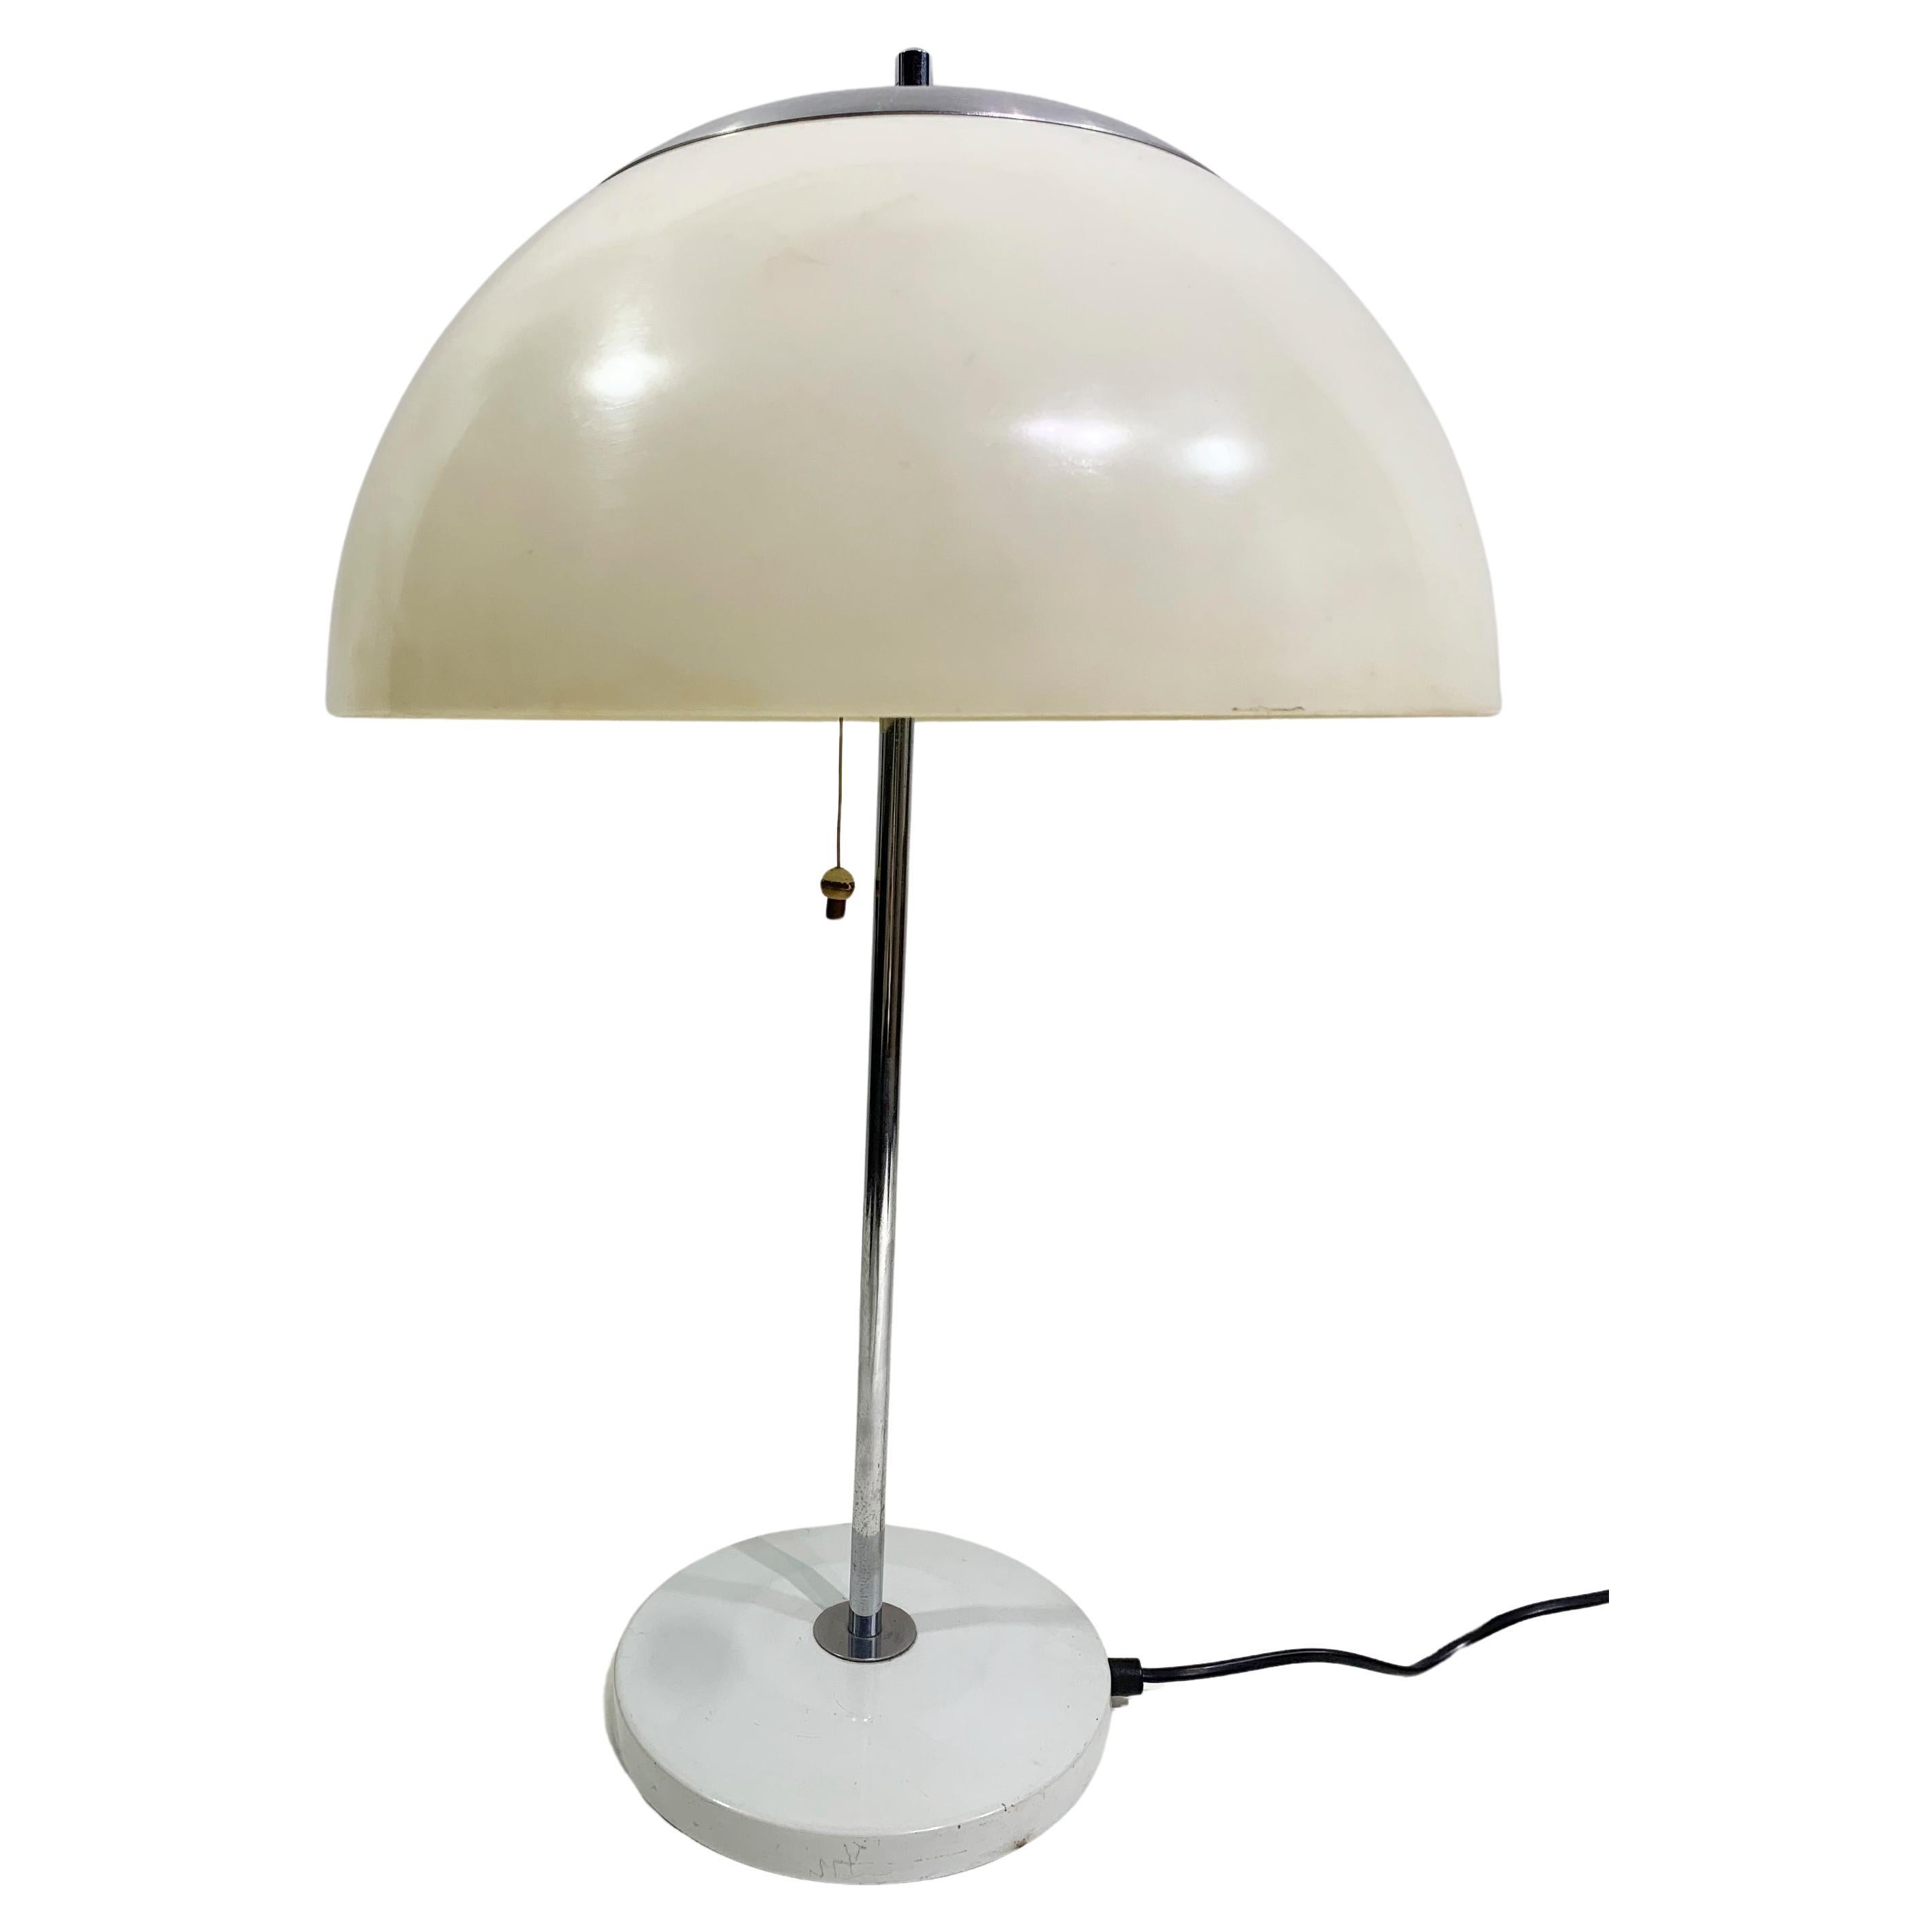 Vintage UNILUX Mushroom Table Lamp, Metal shaft and Cream White plastic Shade